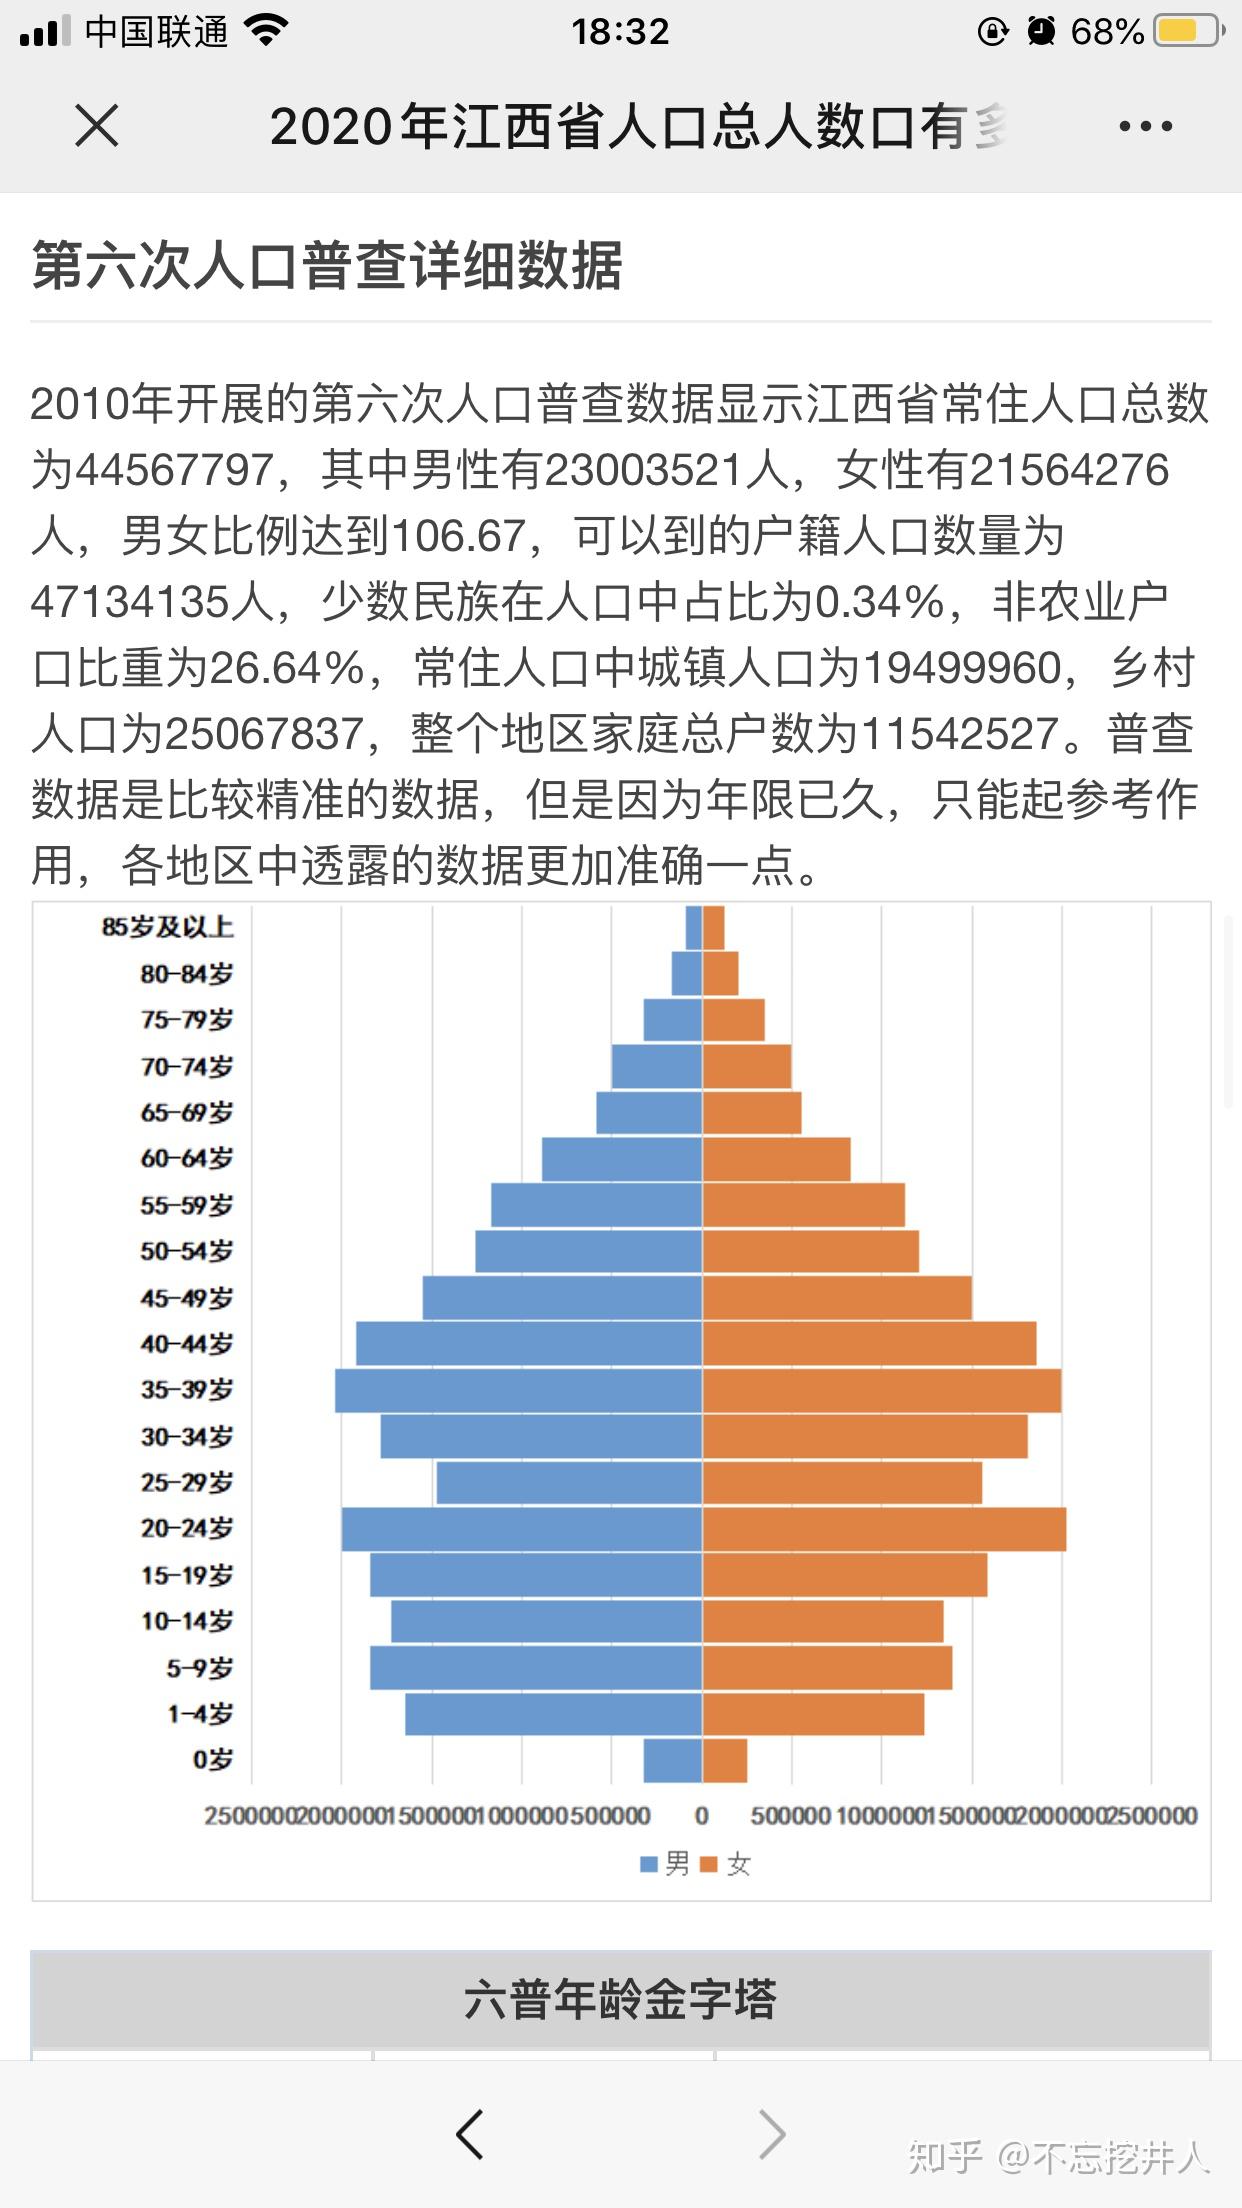 中国人口预计从2020年开始减少吗